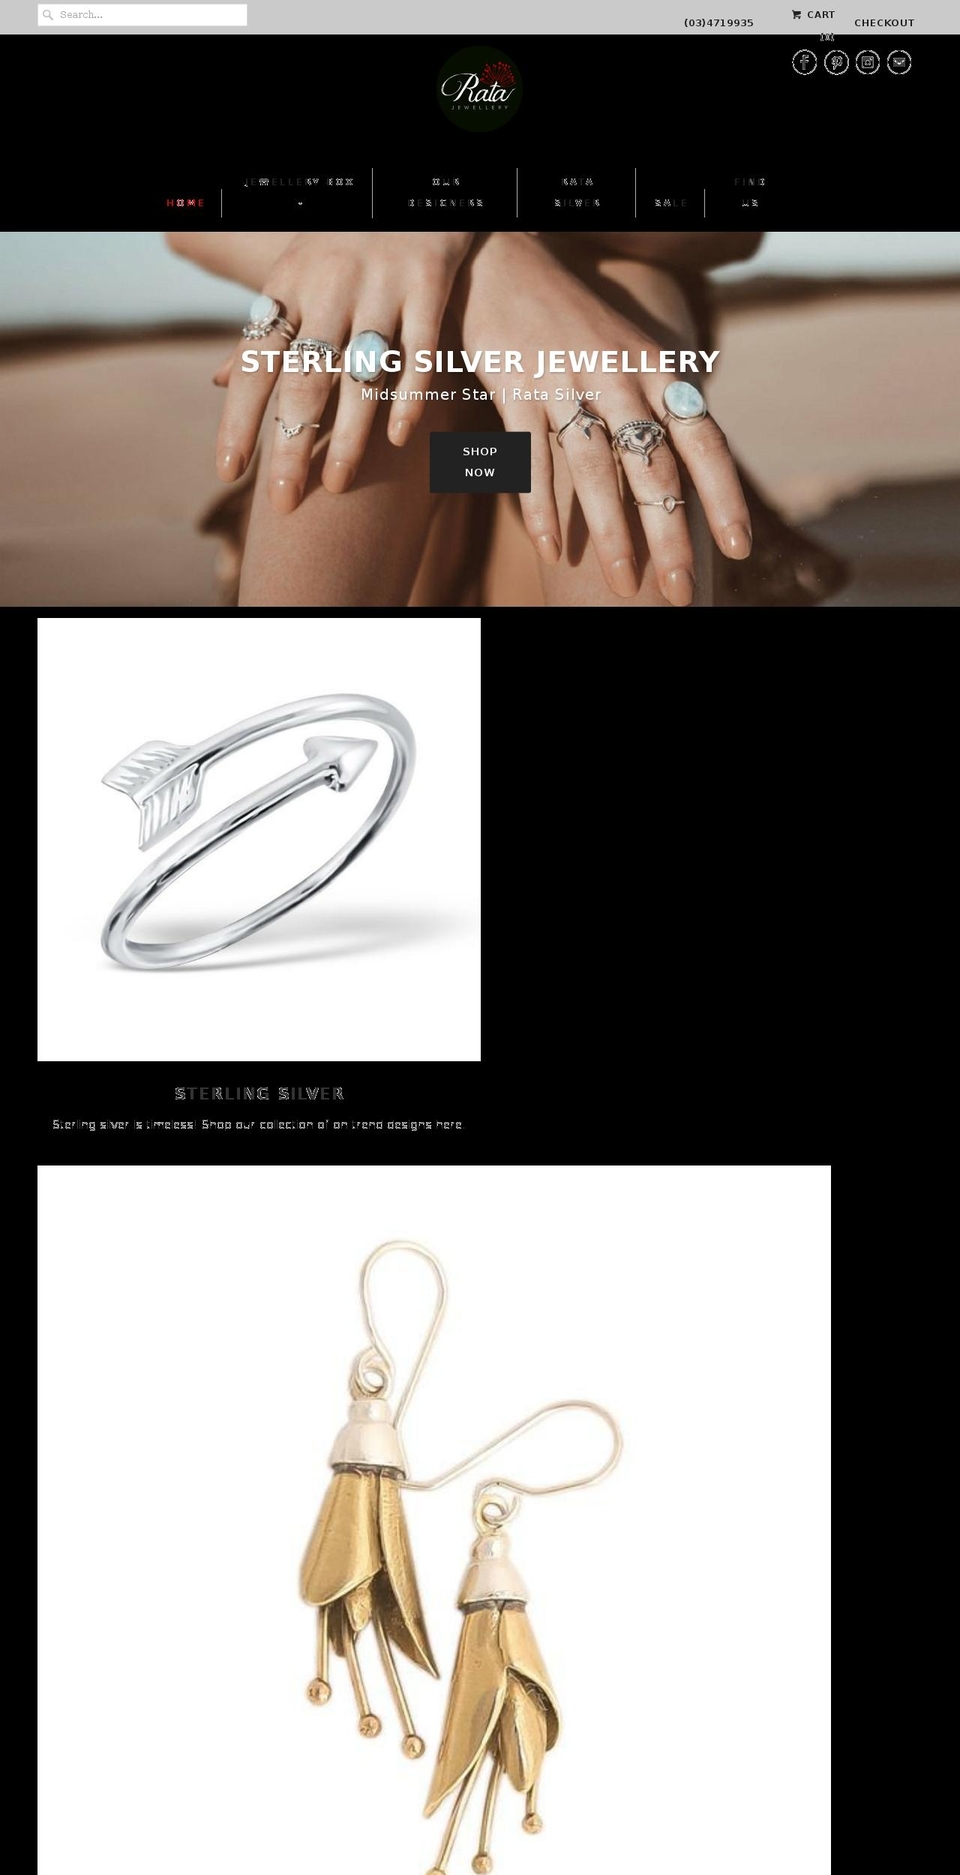 jewellerydunedin.co.nz shopify website screenshot